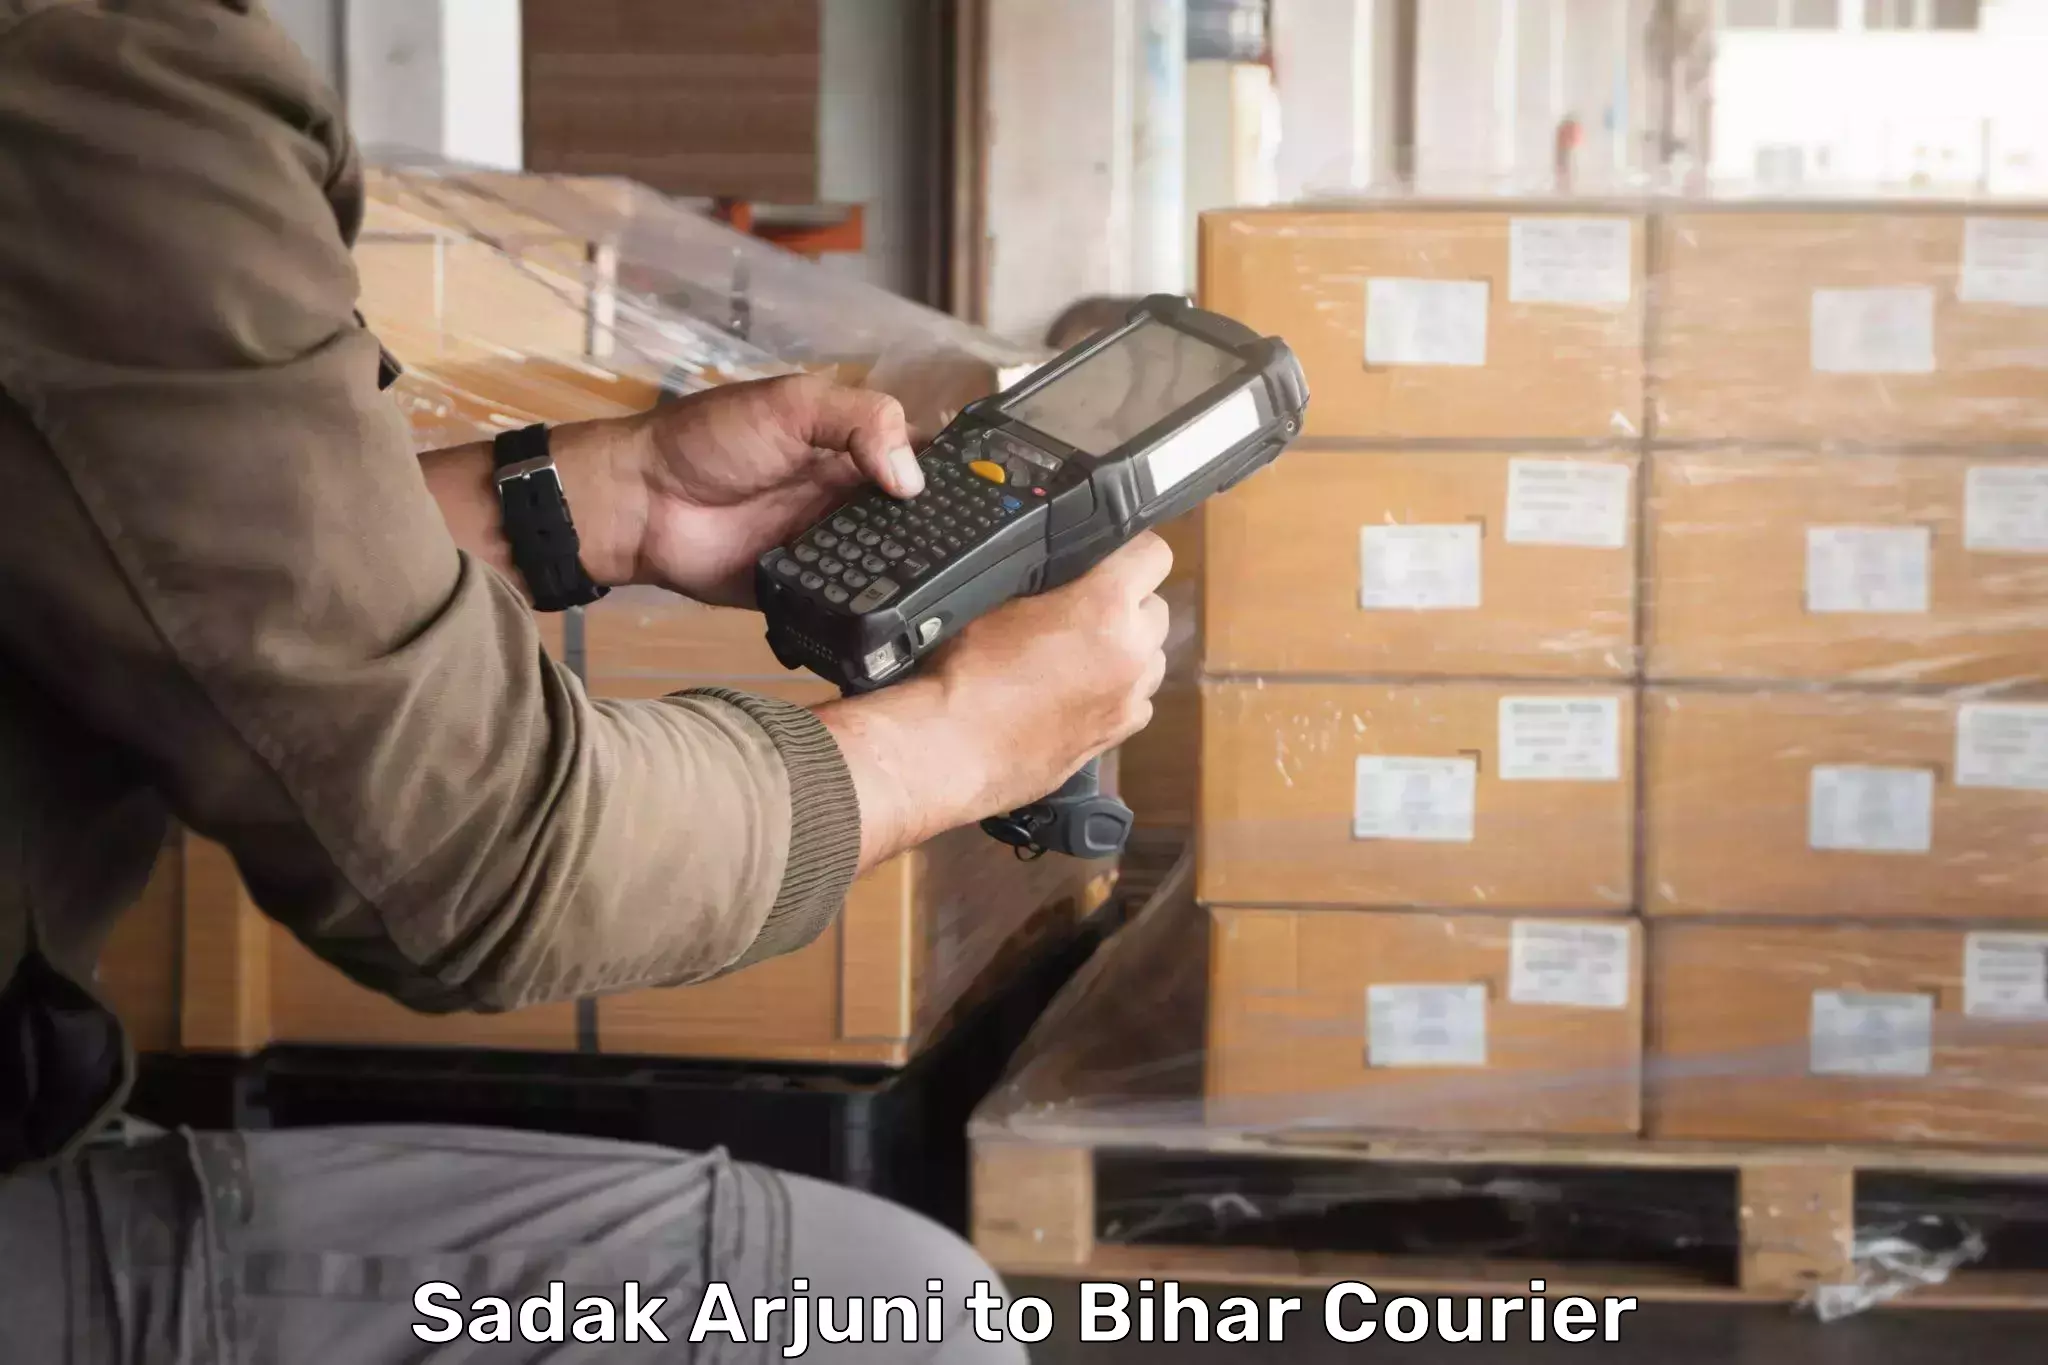 Budget-friendly shipping Sadak Arjuni to Vaishali